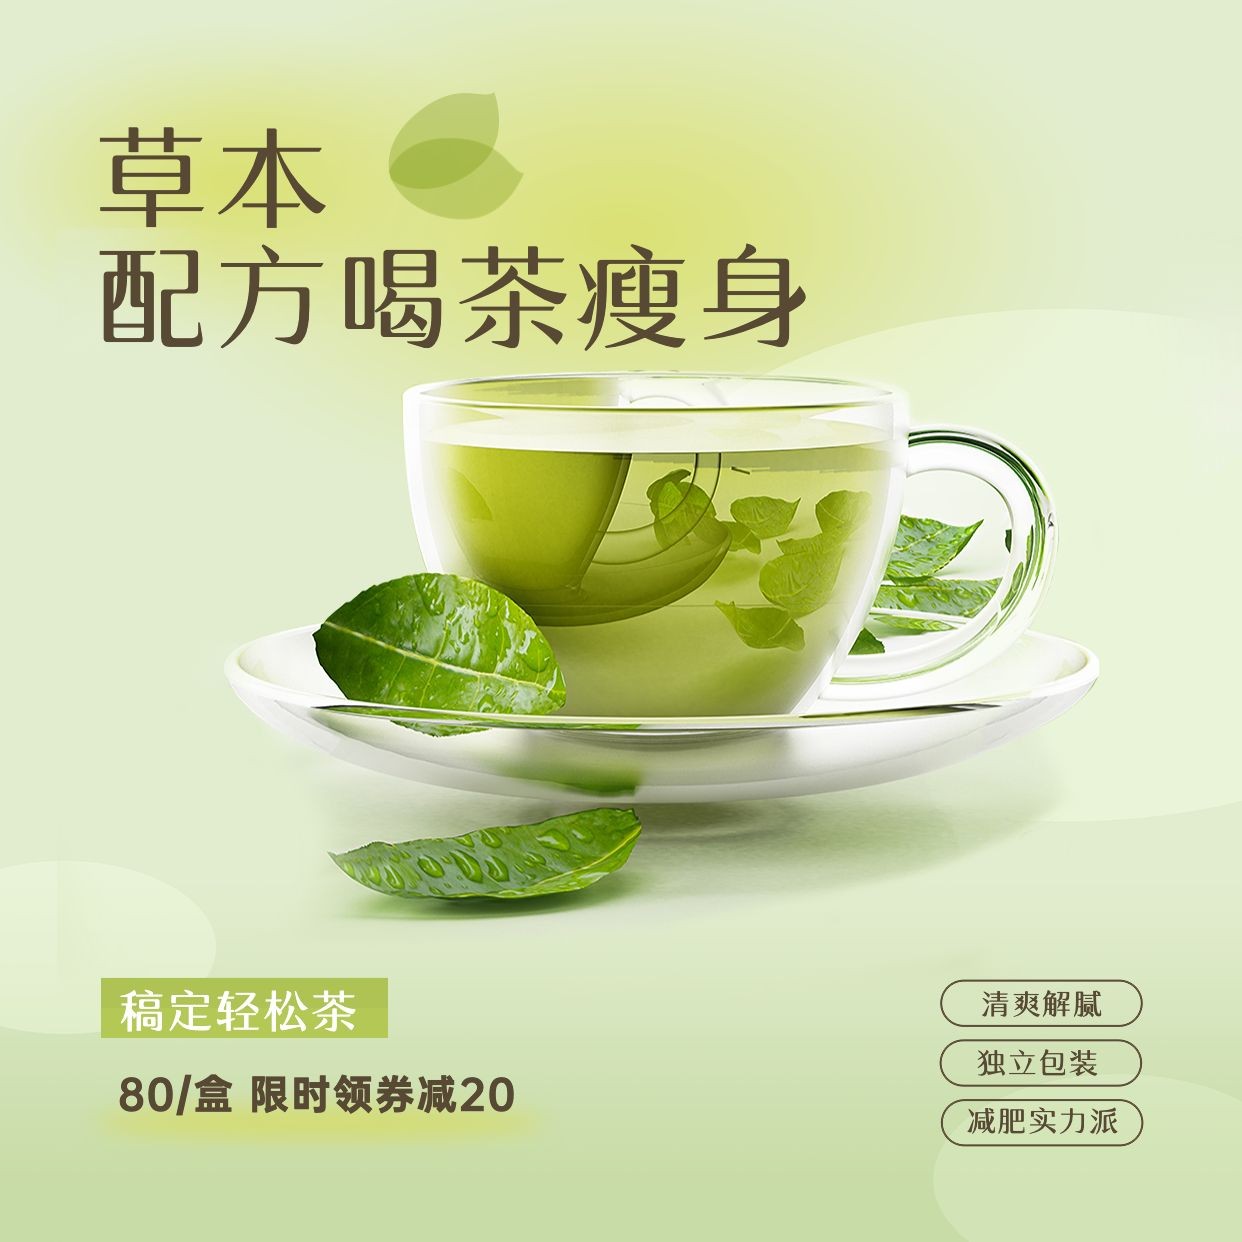 微商养生保健养生茶产品营销展示方形海报